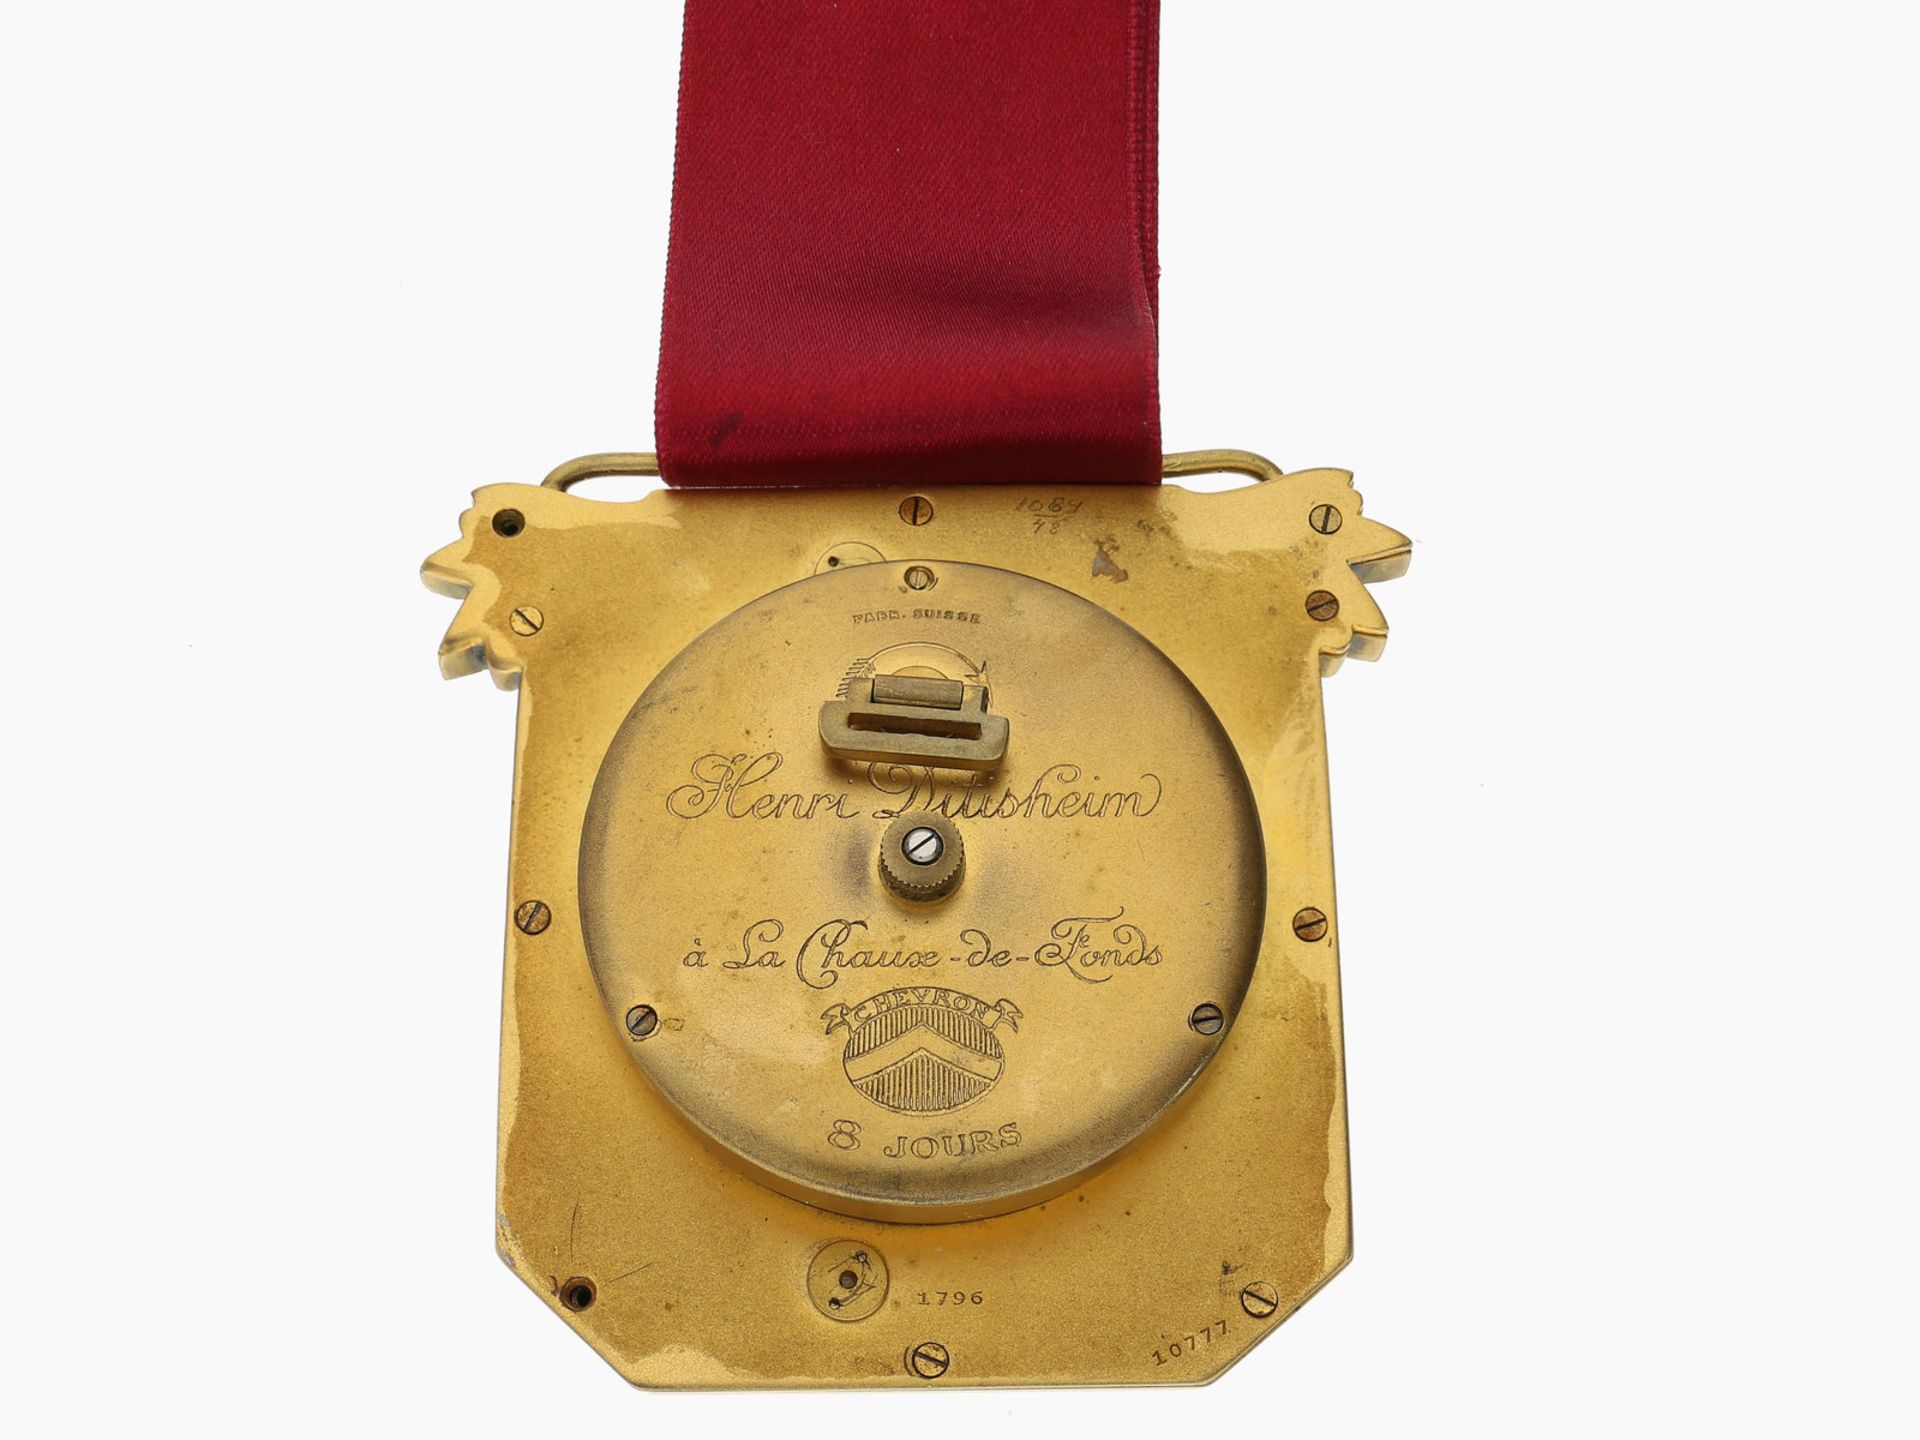 Wanduhr: ungewöhnliche Miniatur-Emaille-Uhr in Form einer Chatelaine, 8-Tage-Werk, Henri Ditisheim - Image 4 of 4